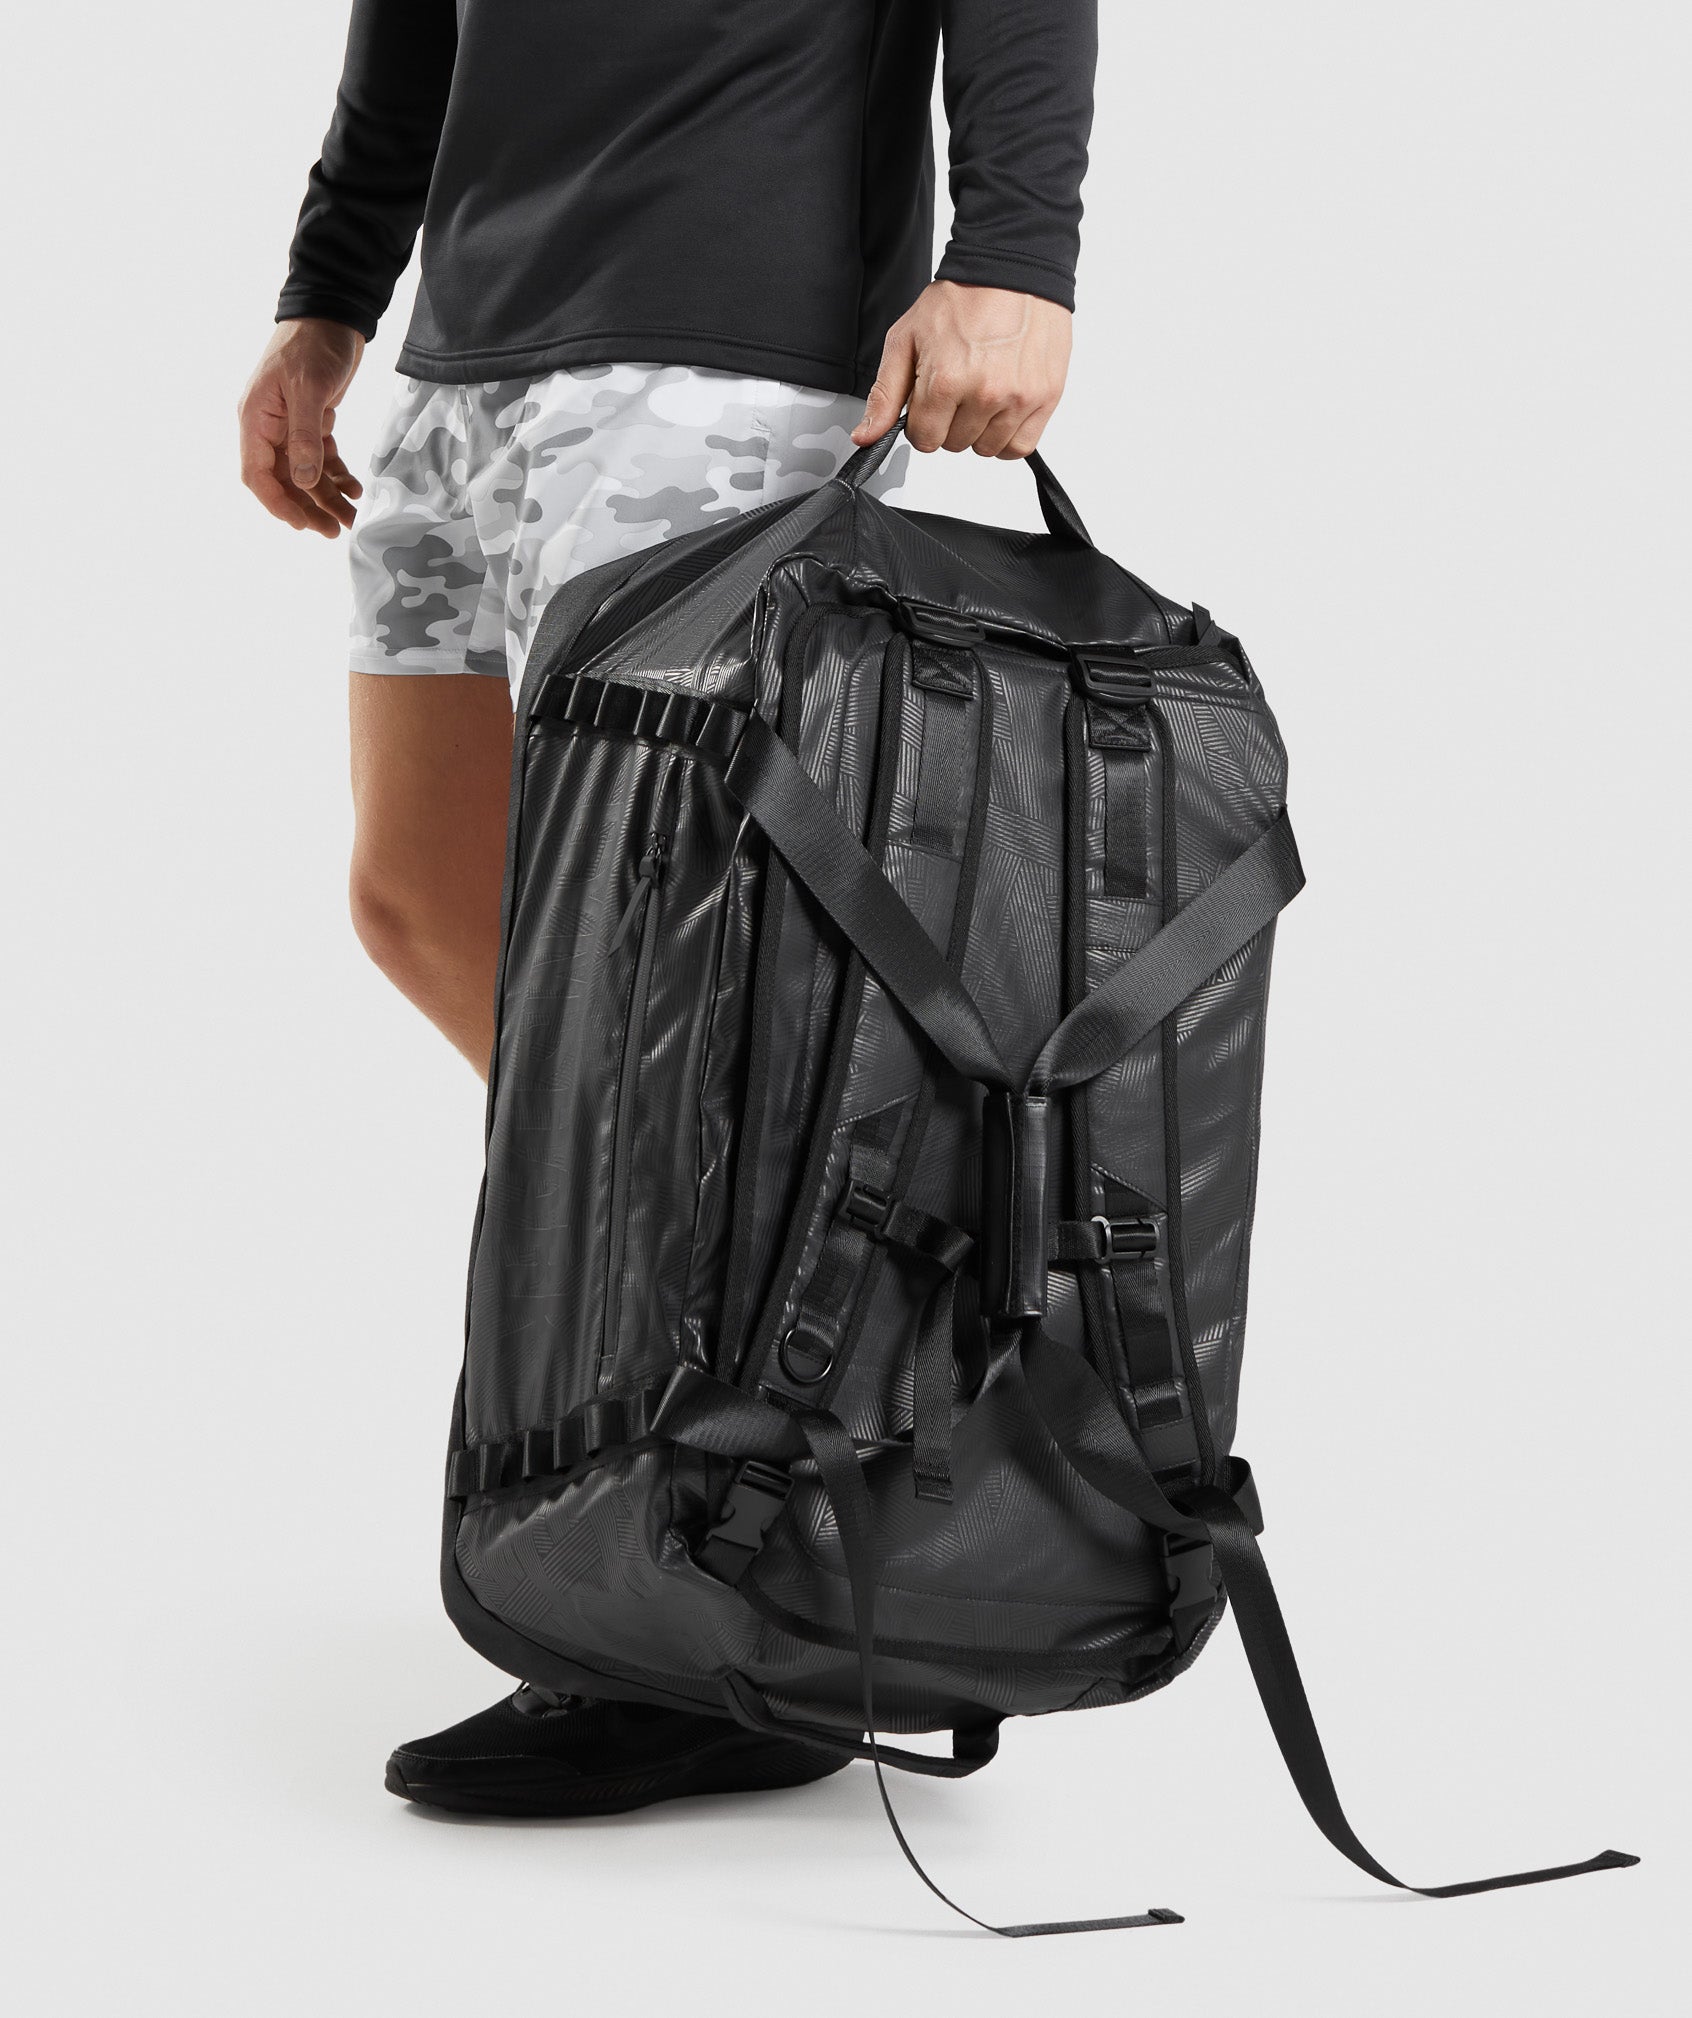 X-Series Duffle Bag in Black Print - view 5